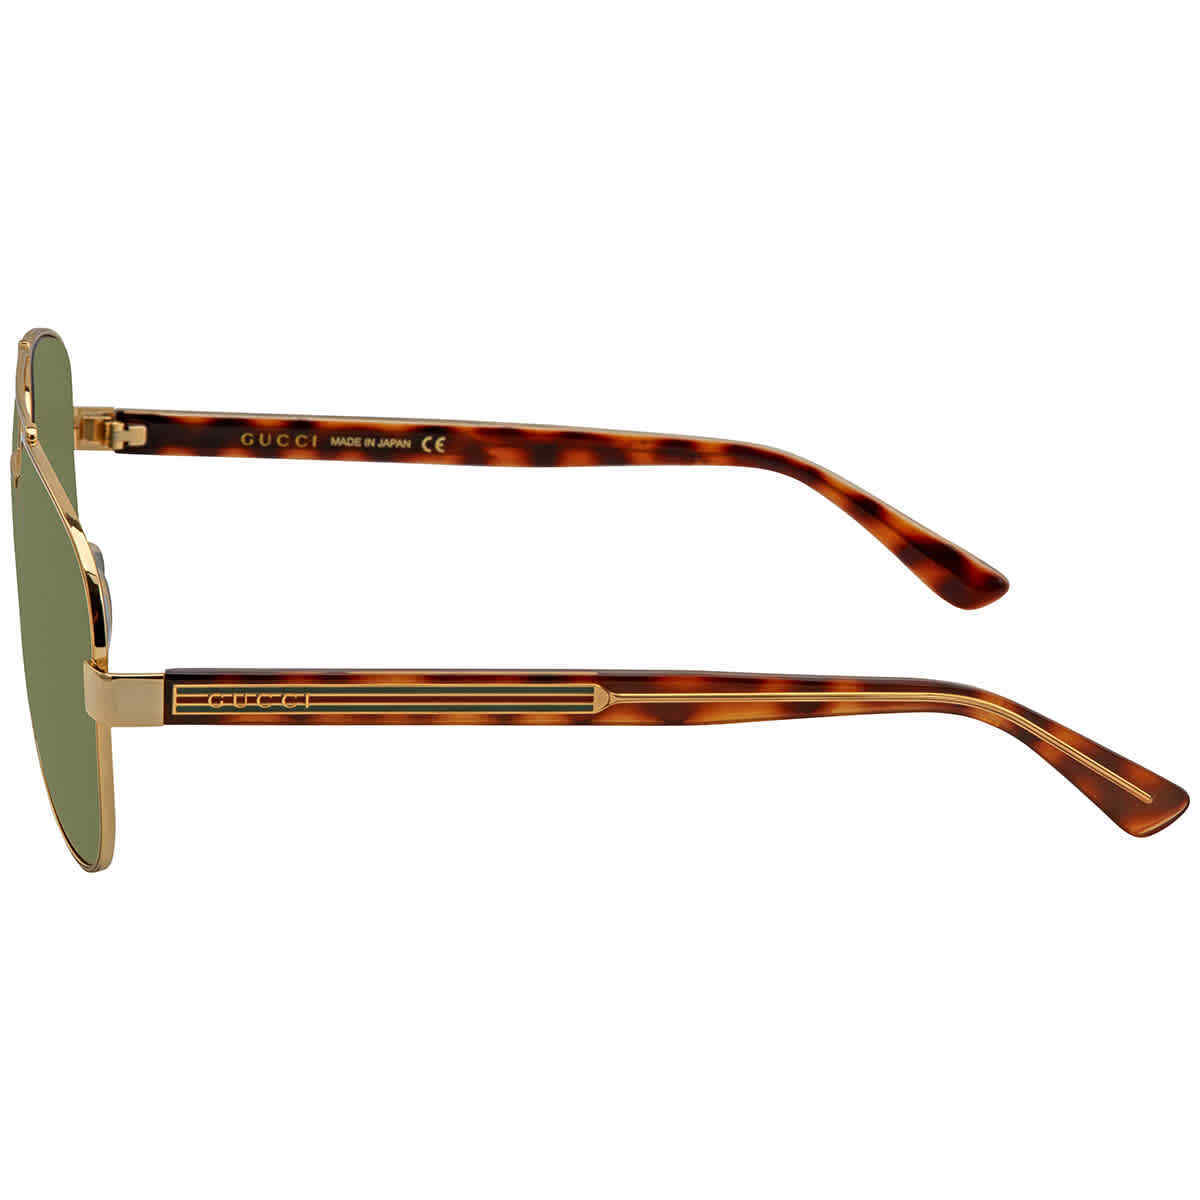 Gucci GG0528S-009 63mm New Sunglasses